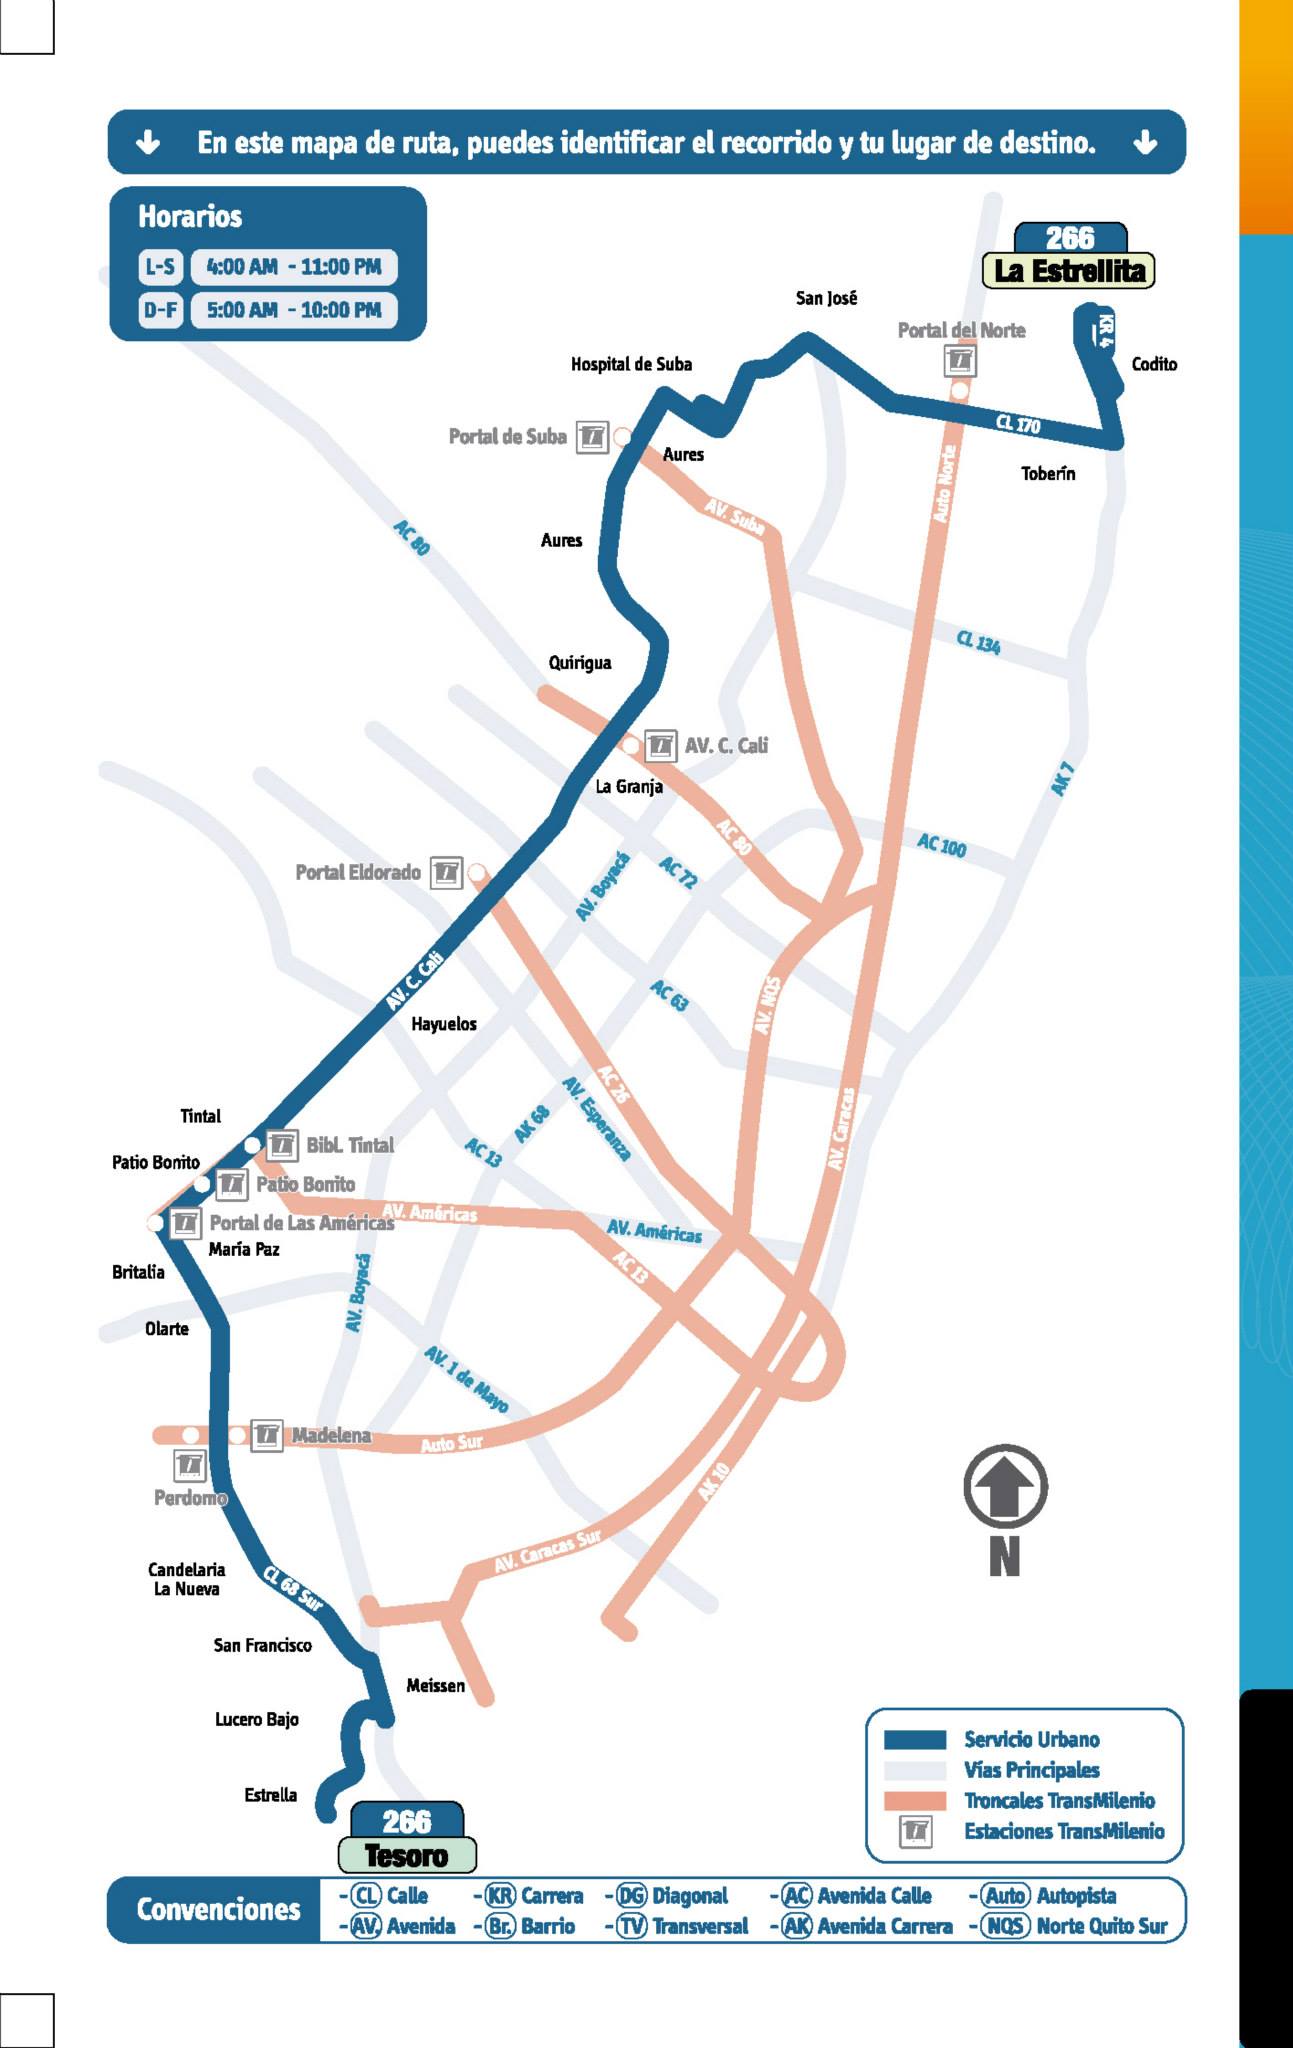 Mapa ruta urbana 266 Tesoro - La Estrellita